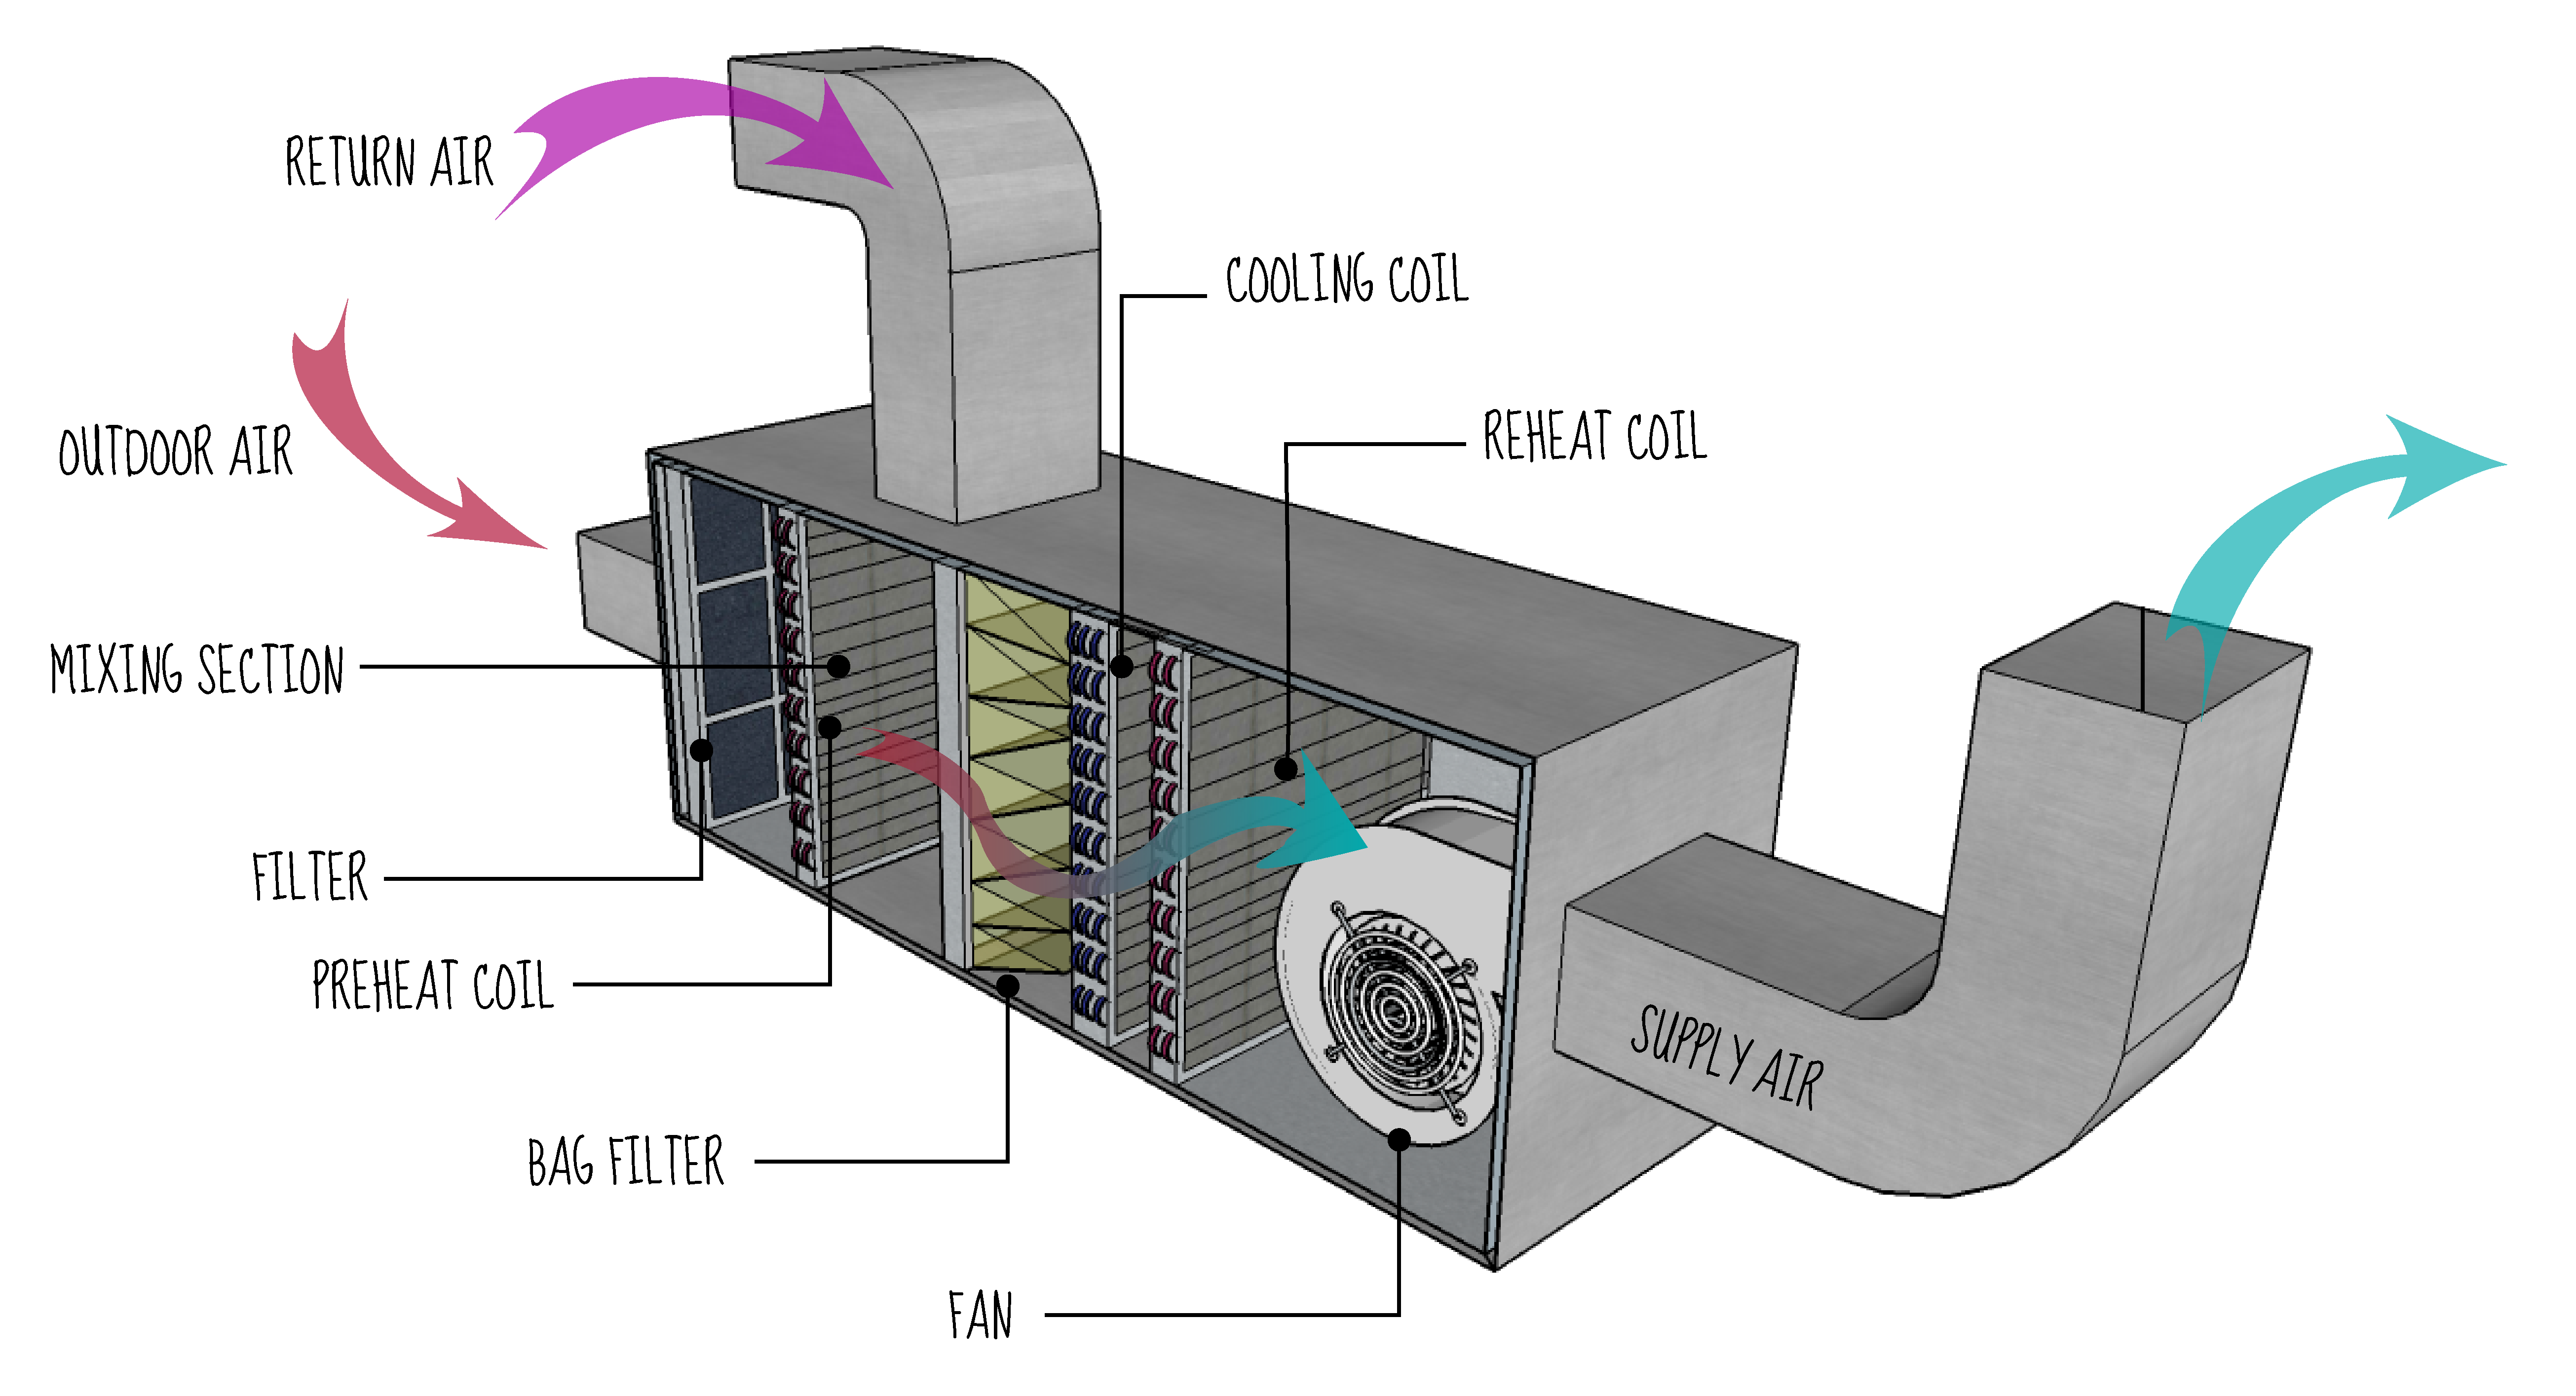 Unit components. Система вентиляции Ahu. HVAC система вентиляции и кондиционирования. Система HVAC расшифровка. Система вентиляции Air Ventilation.